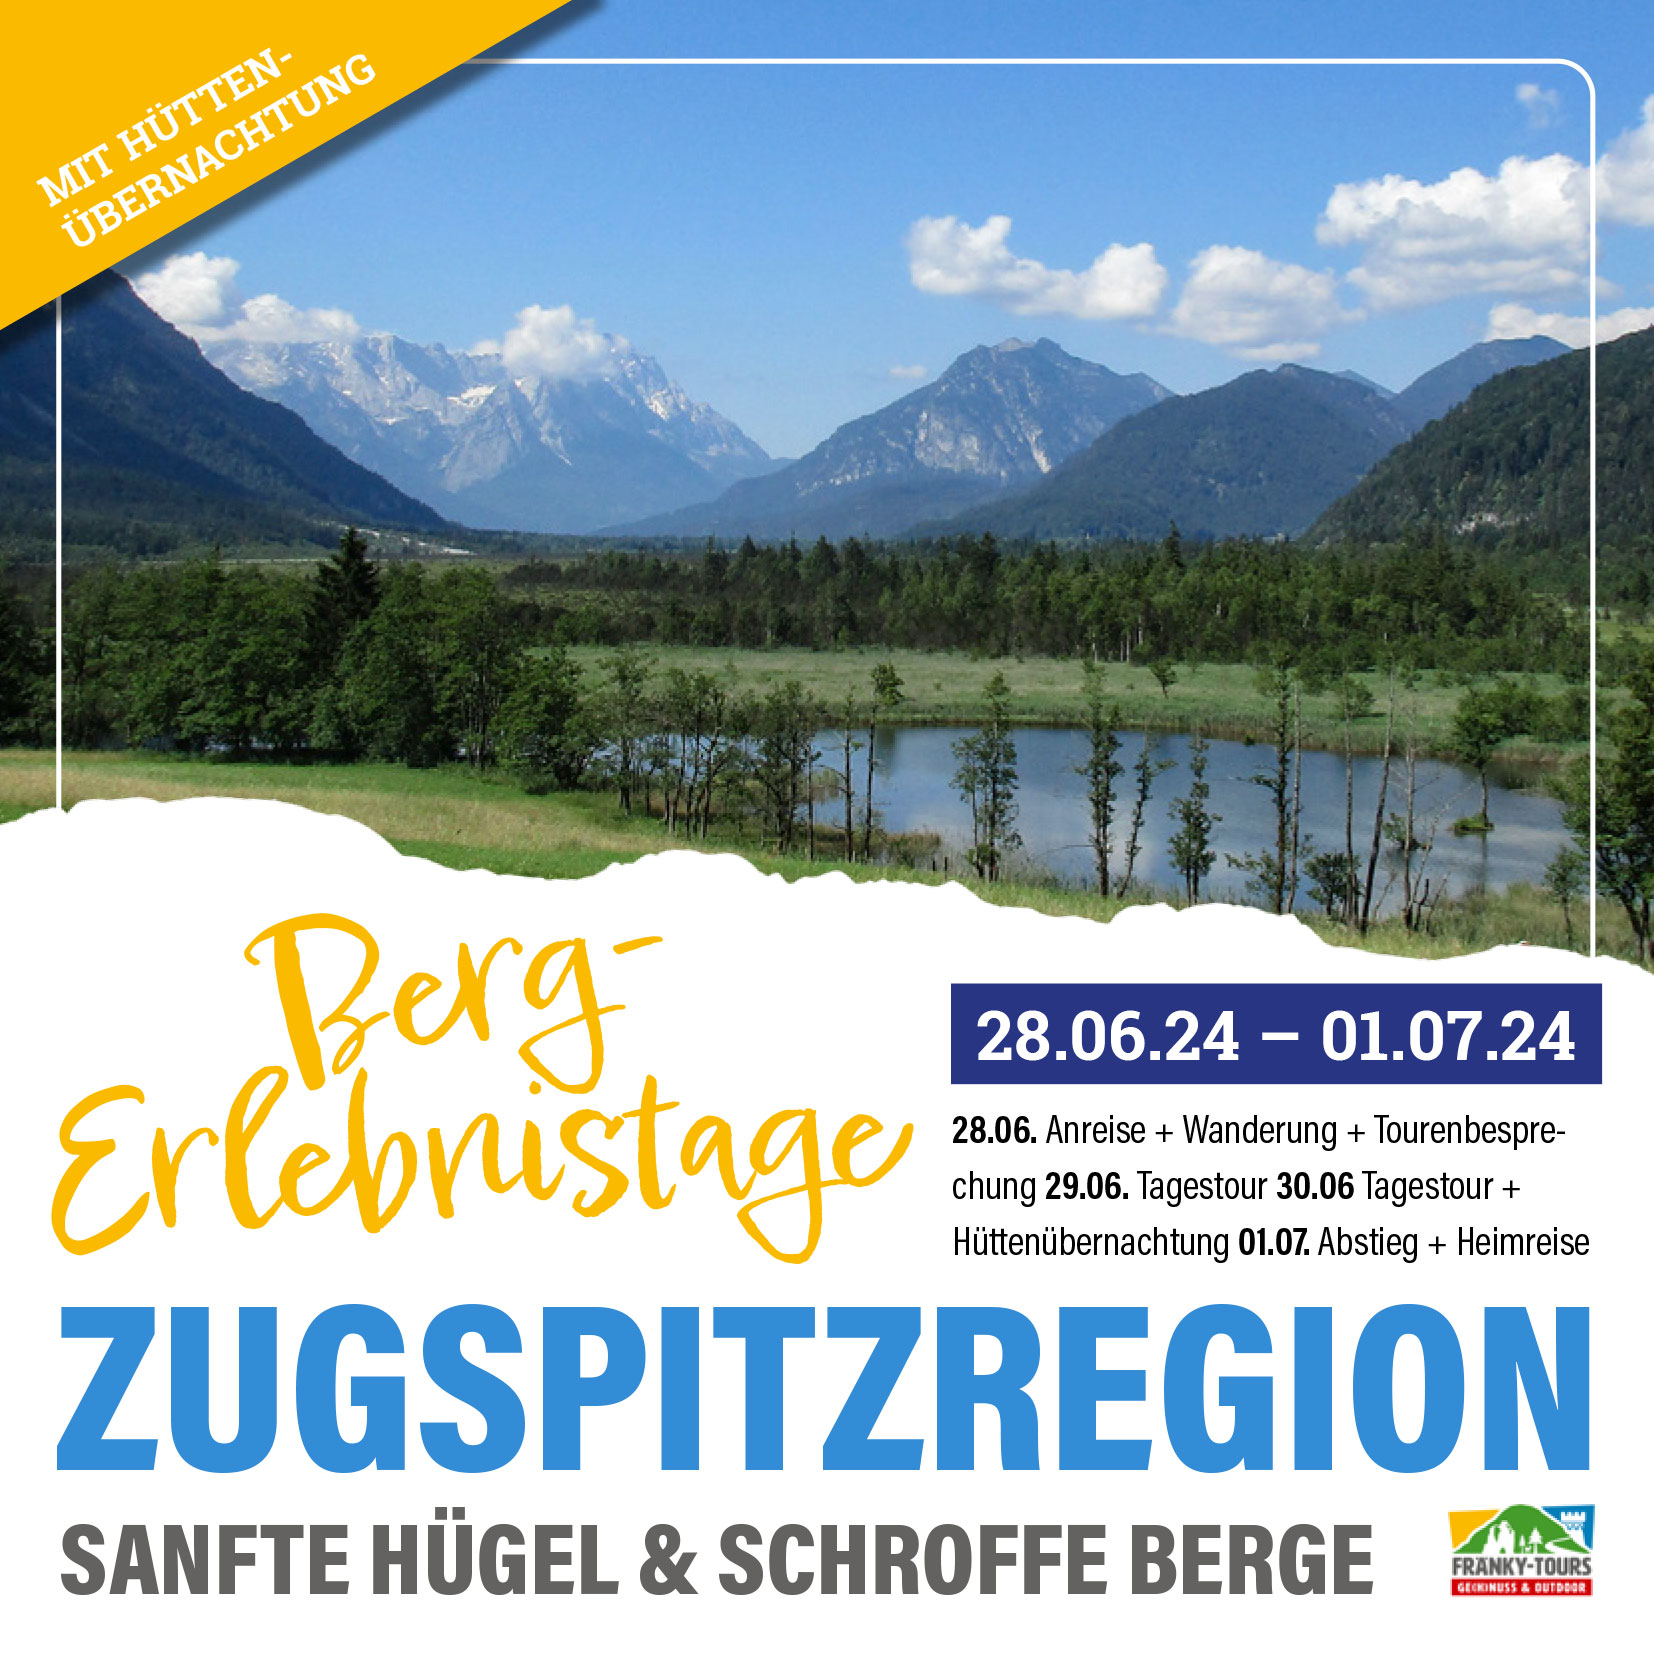 Berg-Erlebnistage Zugspitzgebiet